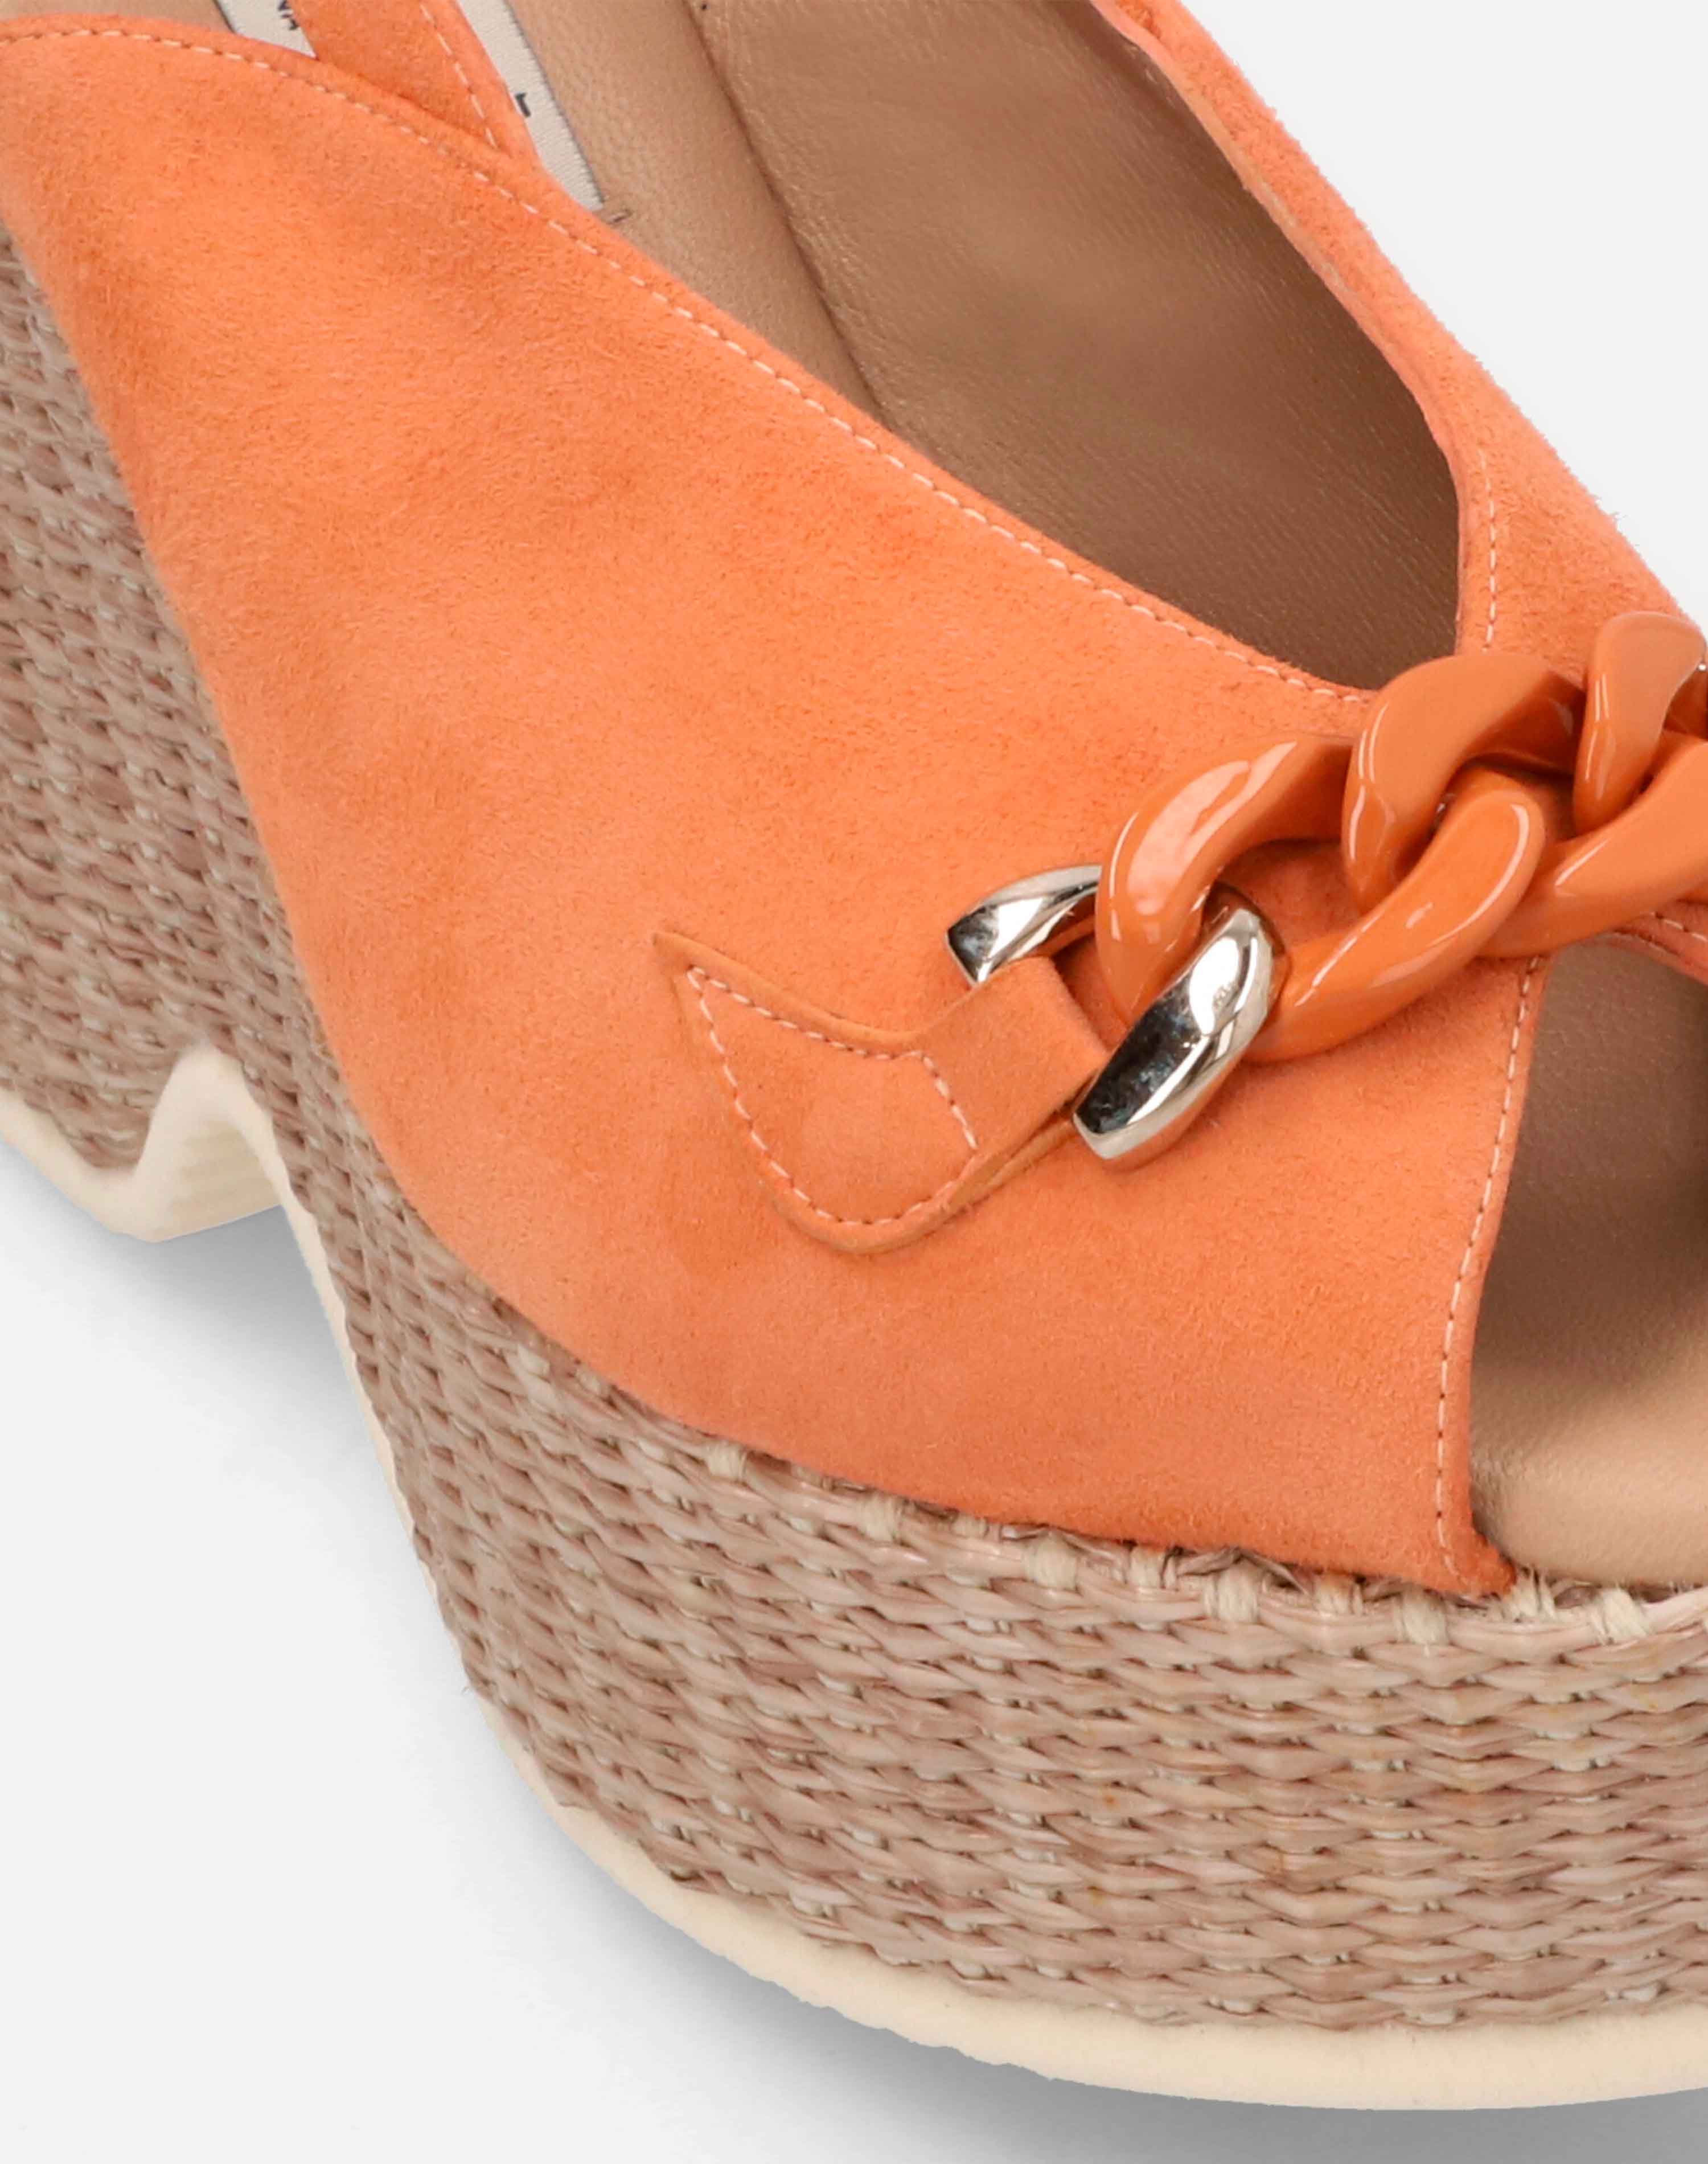 Sandalia peep toe con plataforma en ante color naranja